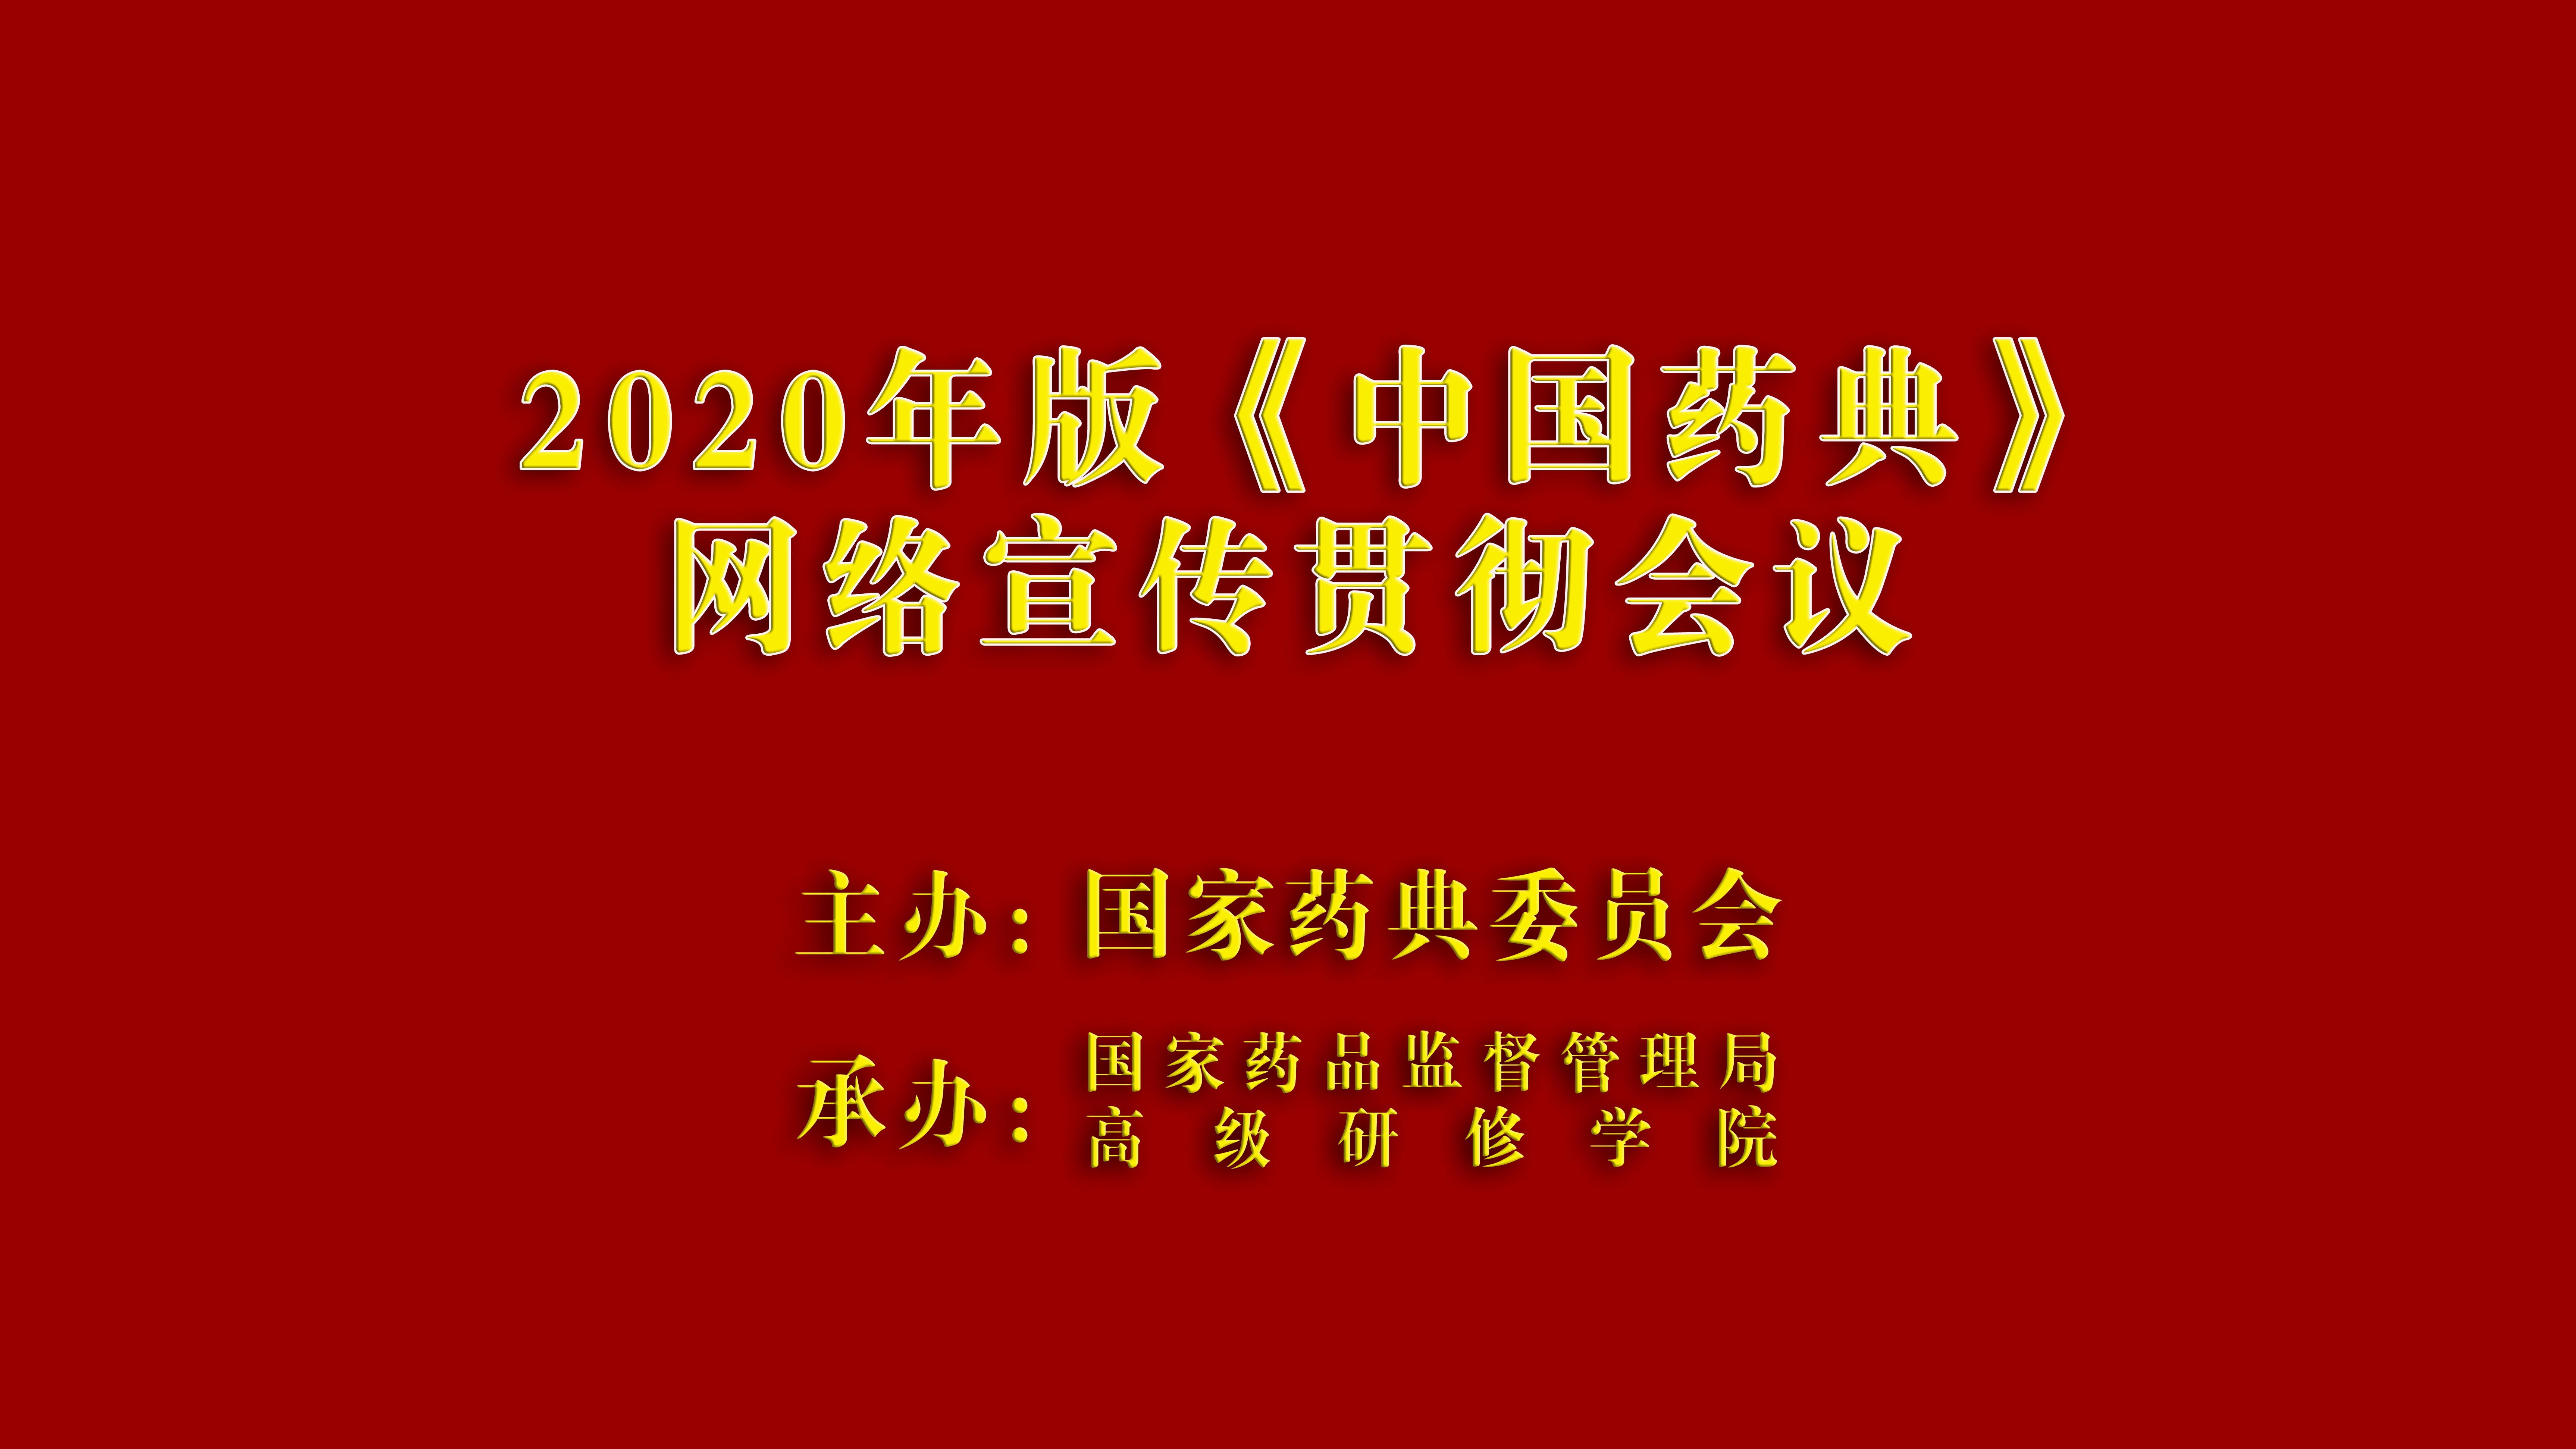 2020年版《中国药典》网络宣传贯彻会议